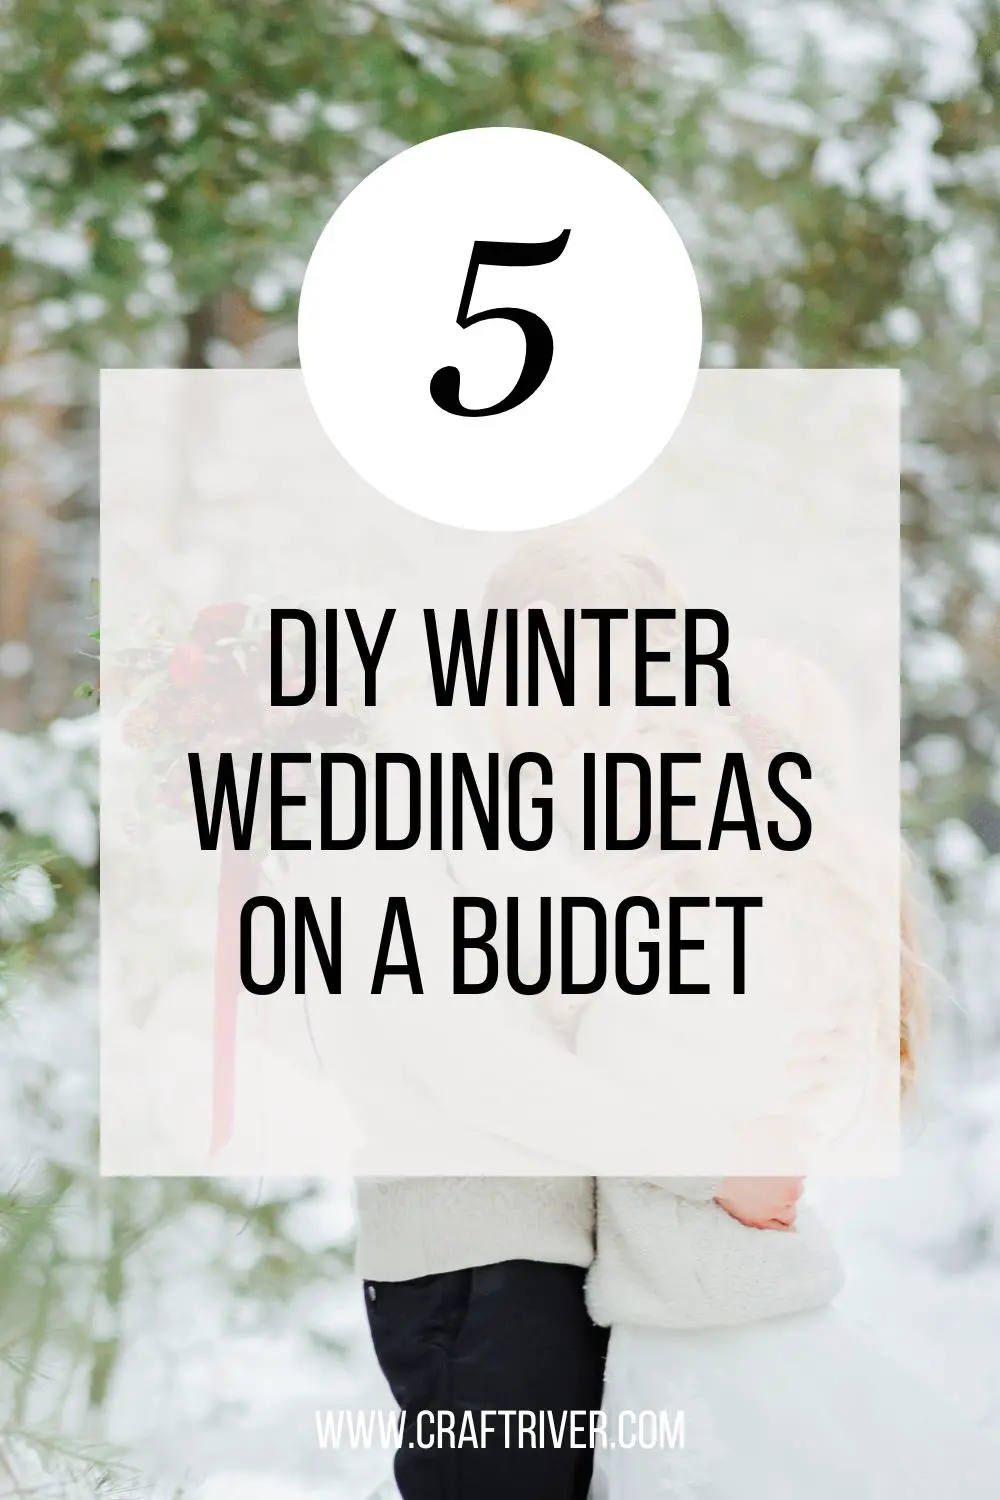 DIY Winter Wedding Ideas on a Budget